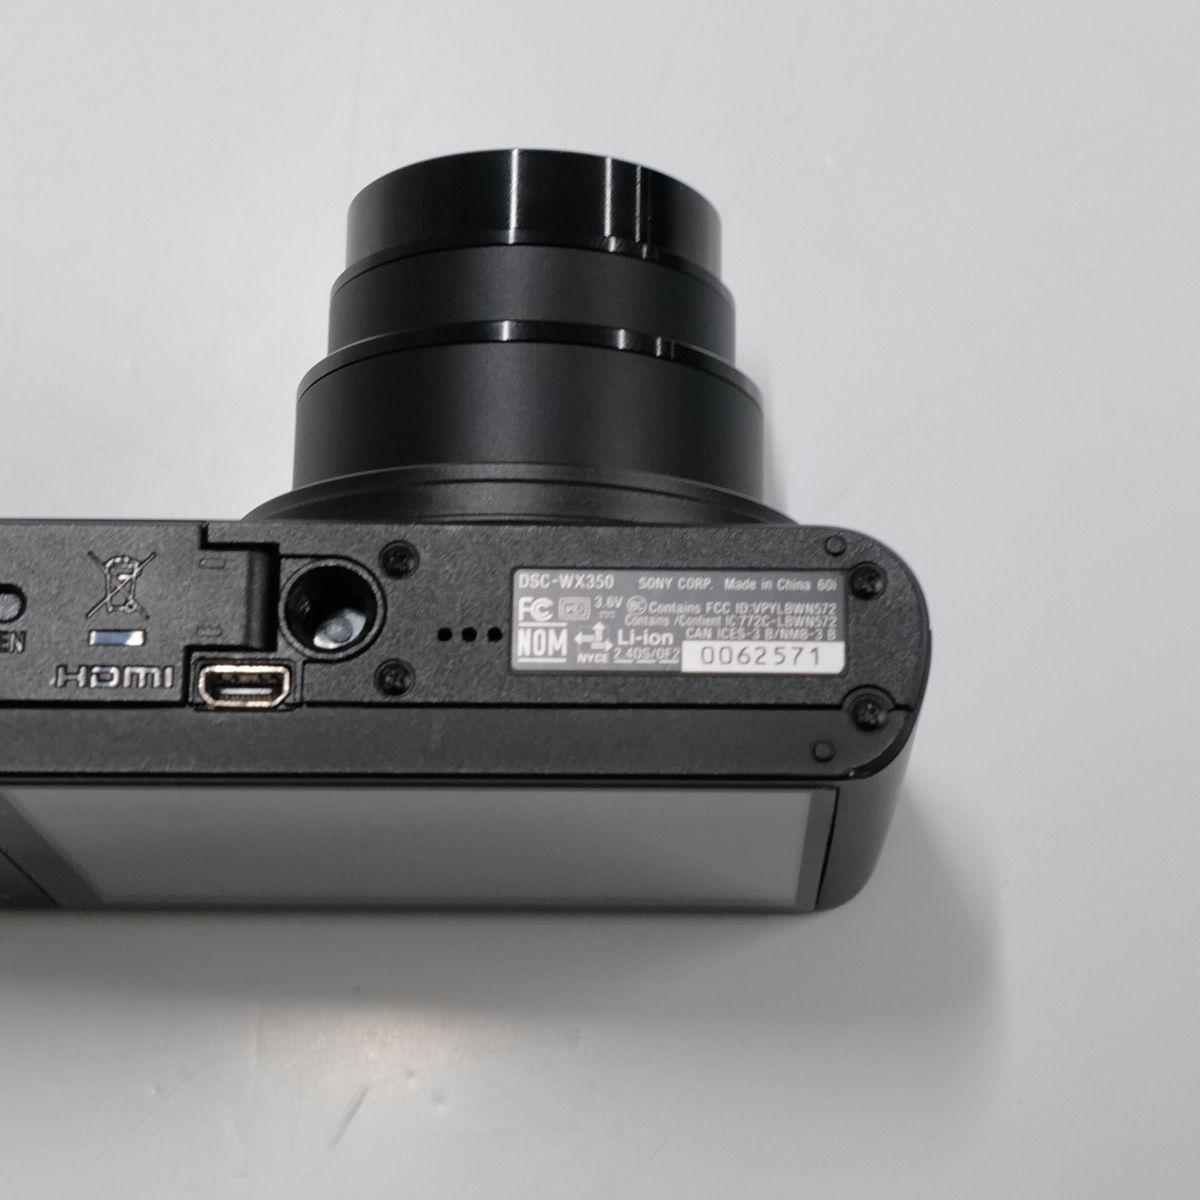 DSC-WX350 SONY Cyber-Shot USED超美品 デジタルカメラ 本体＋バッテリー 広角25mm 光学20倍ズーム Wi-Fi  高速AF 完動品 中古 CE3334 - メルカリ